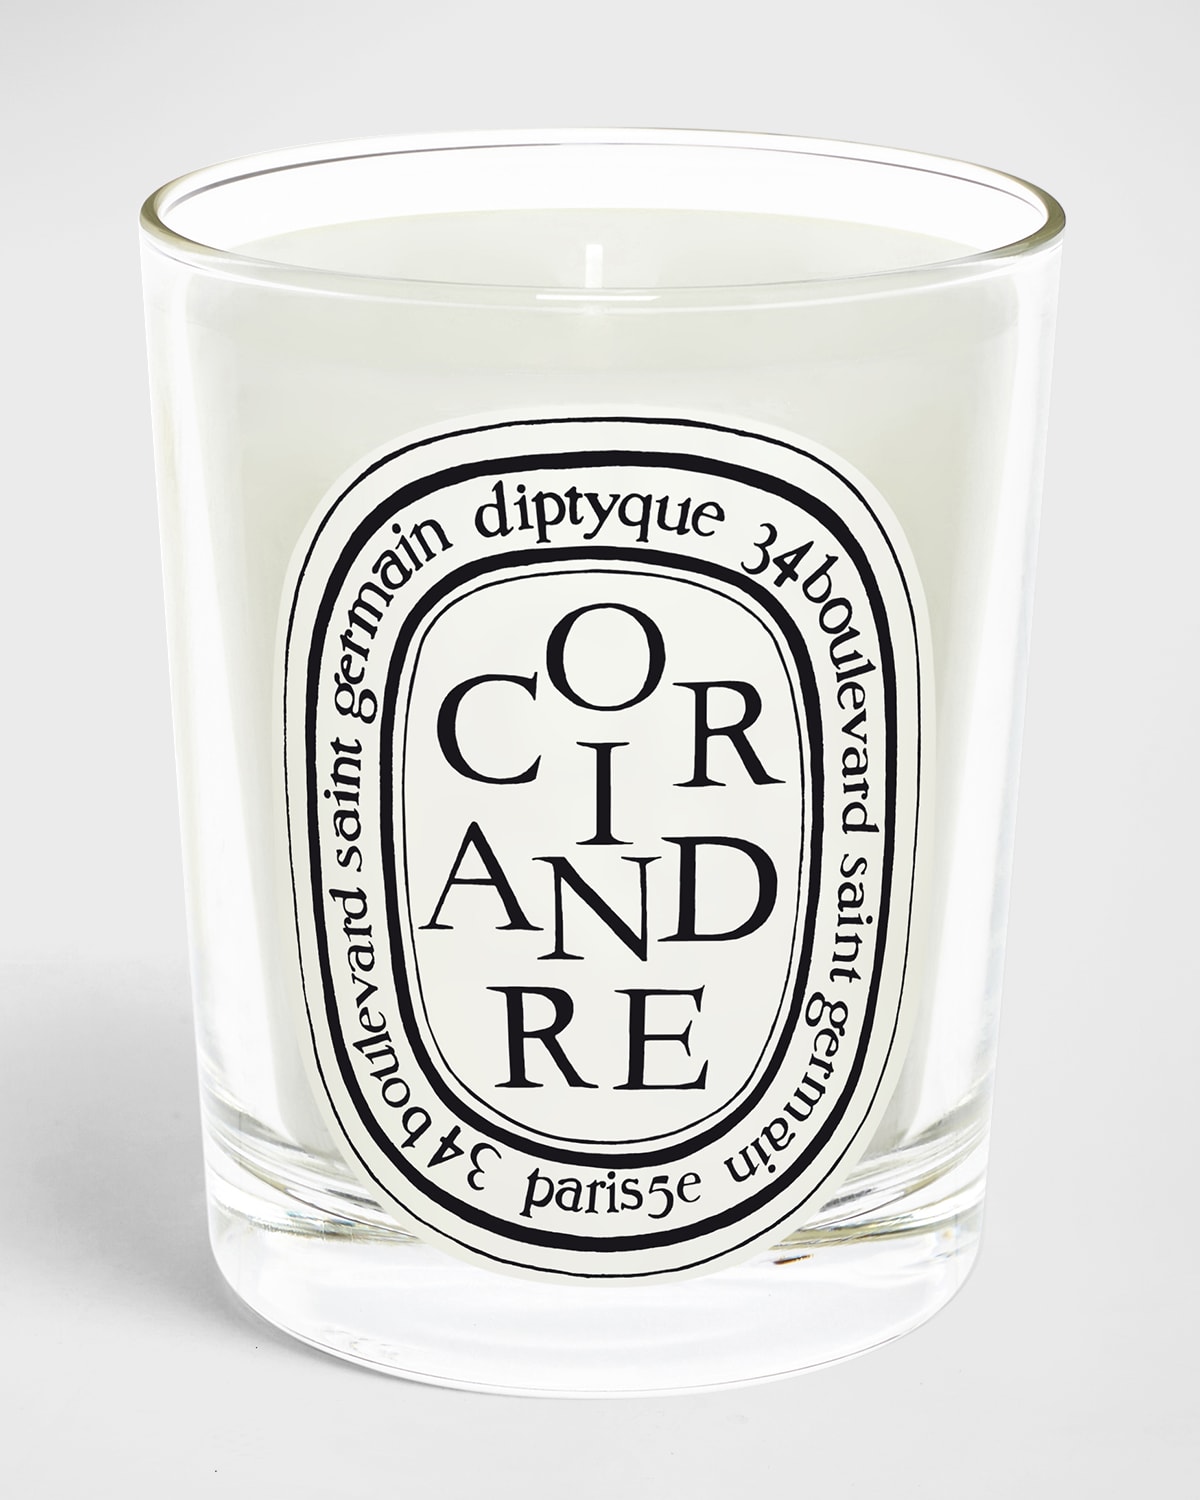 6.7 oz. Coriandre Candle